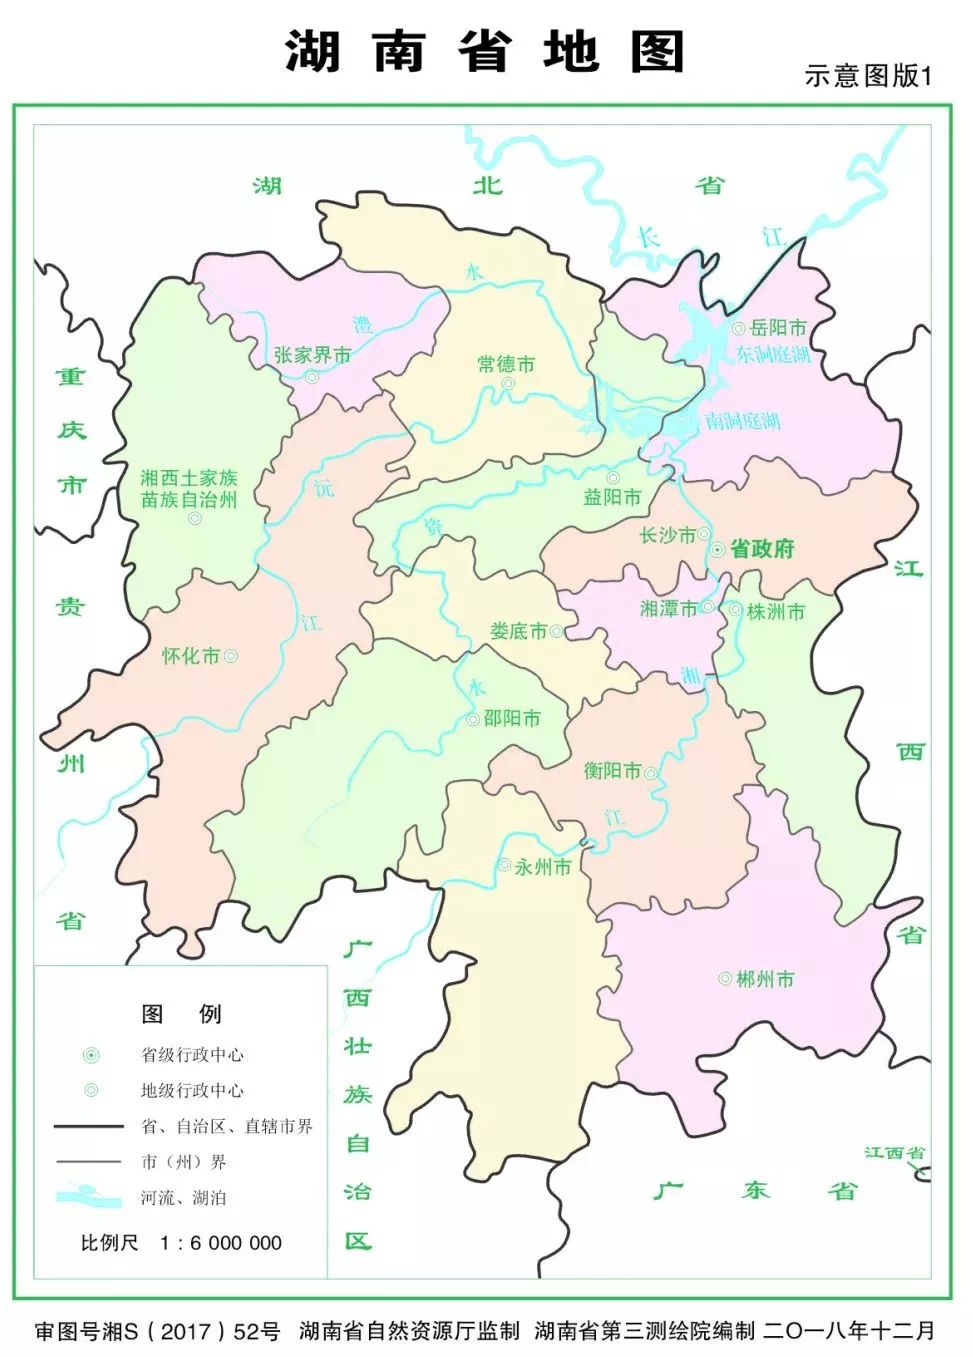 想象中的湖南地图:  20  广东地图:  想象中的广东地图:  21  广西